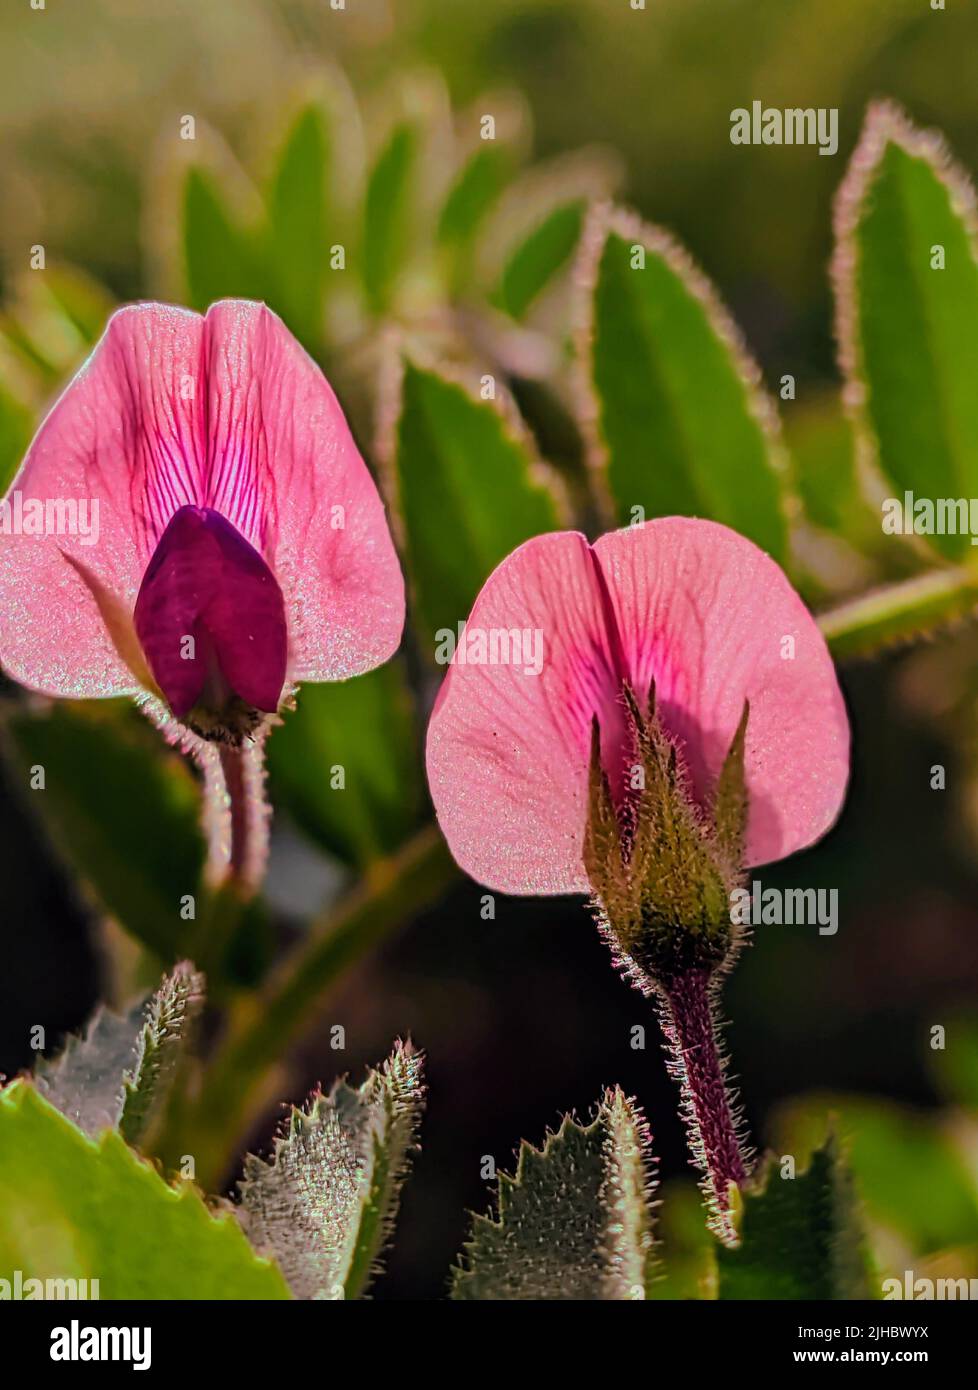 Belle vue des fleurs de Restharrow en fleur au printemps fleur rose du champ Restharrow, Ononis arvensis Banque D'Images